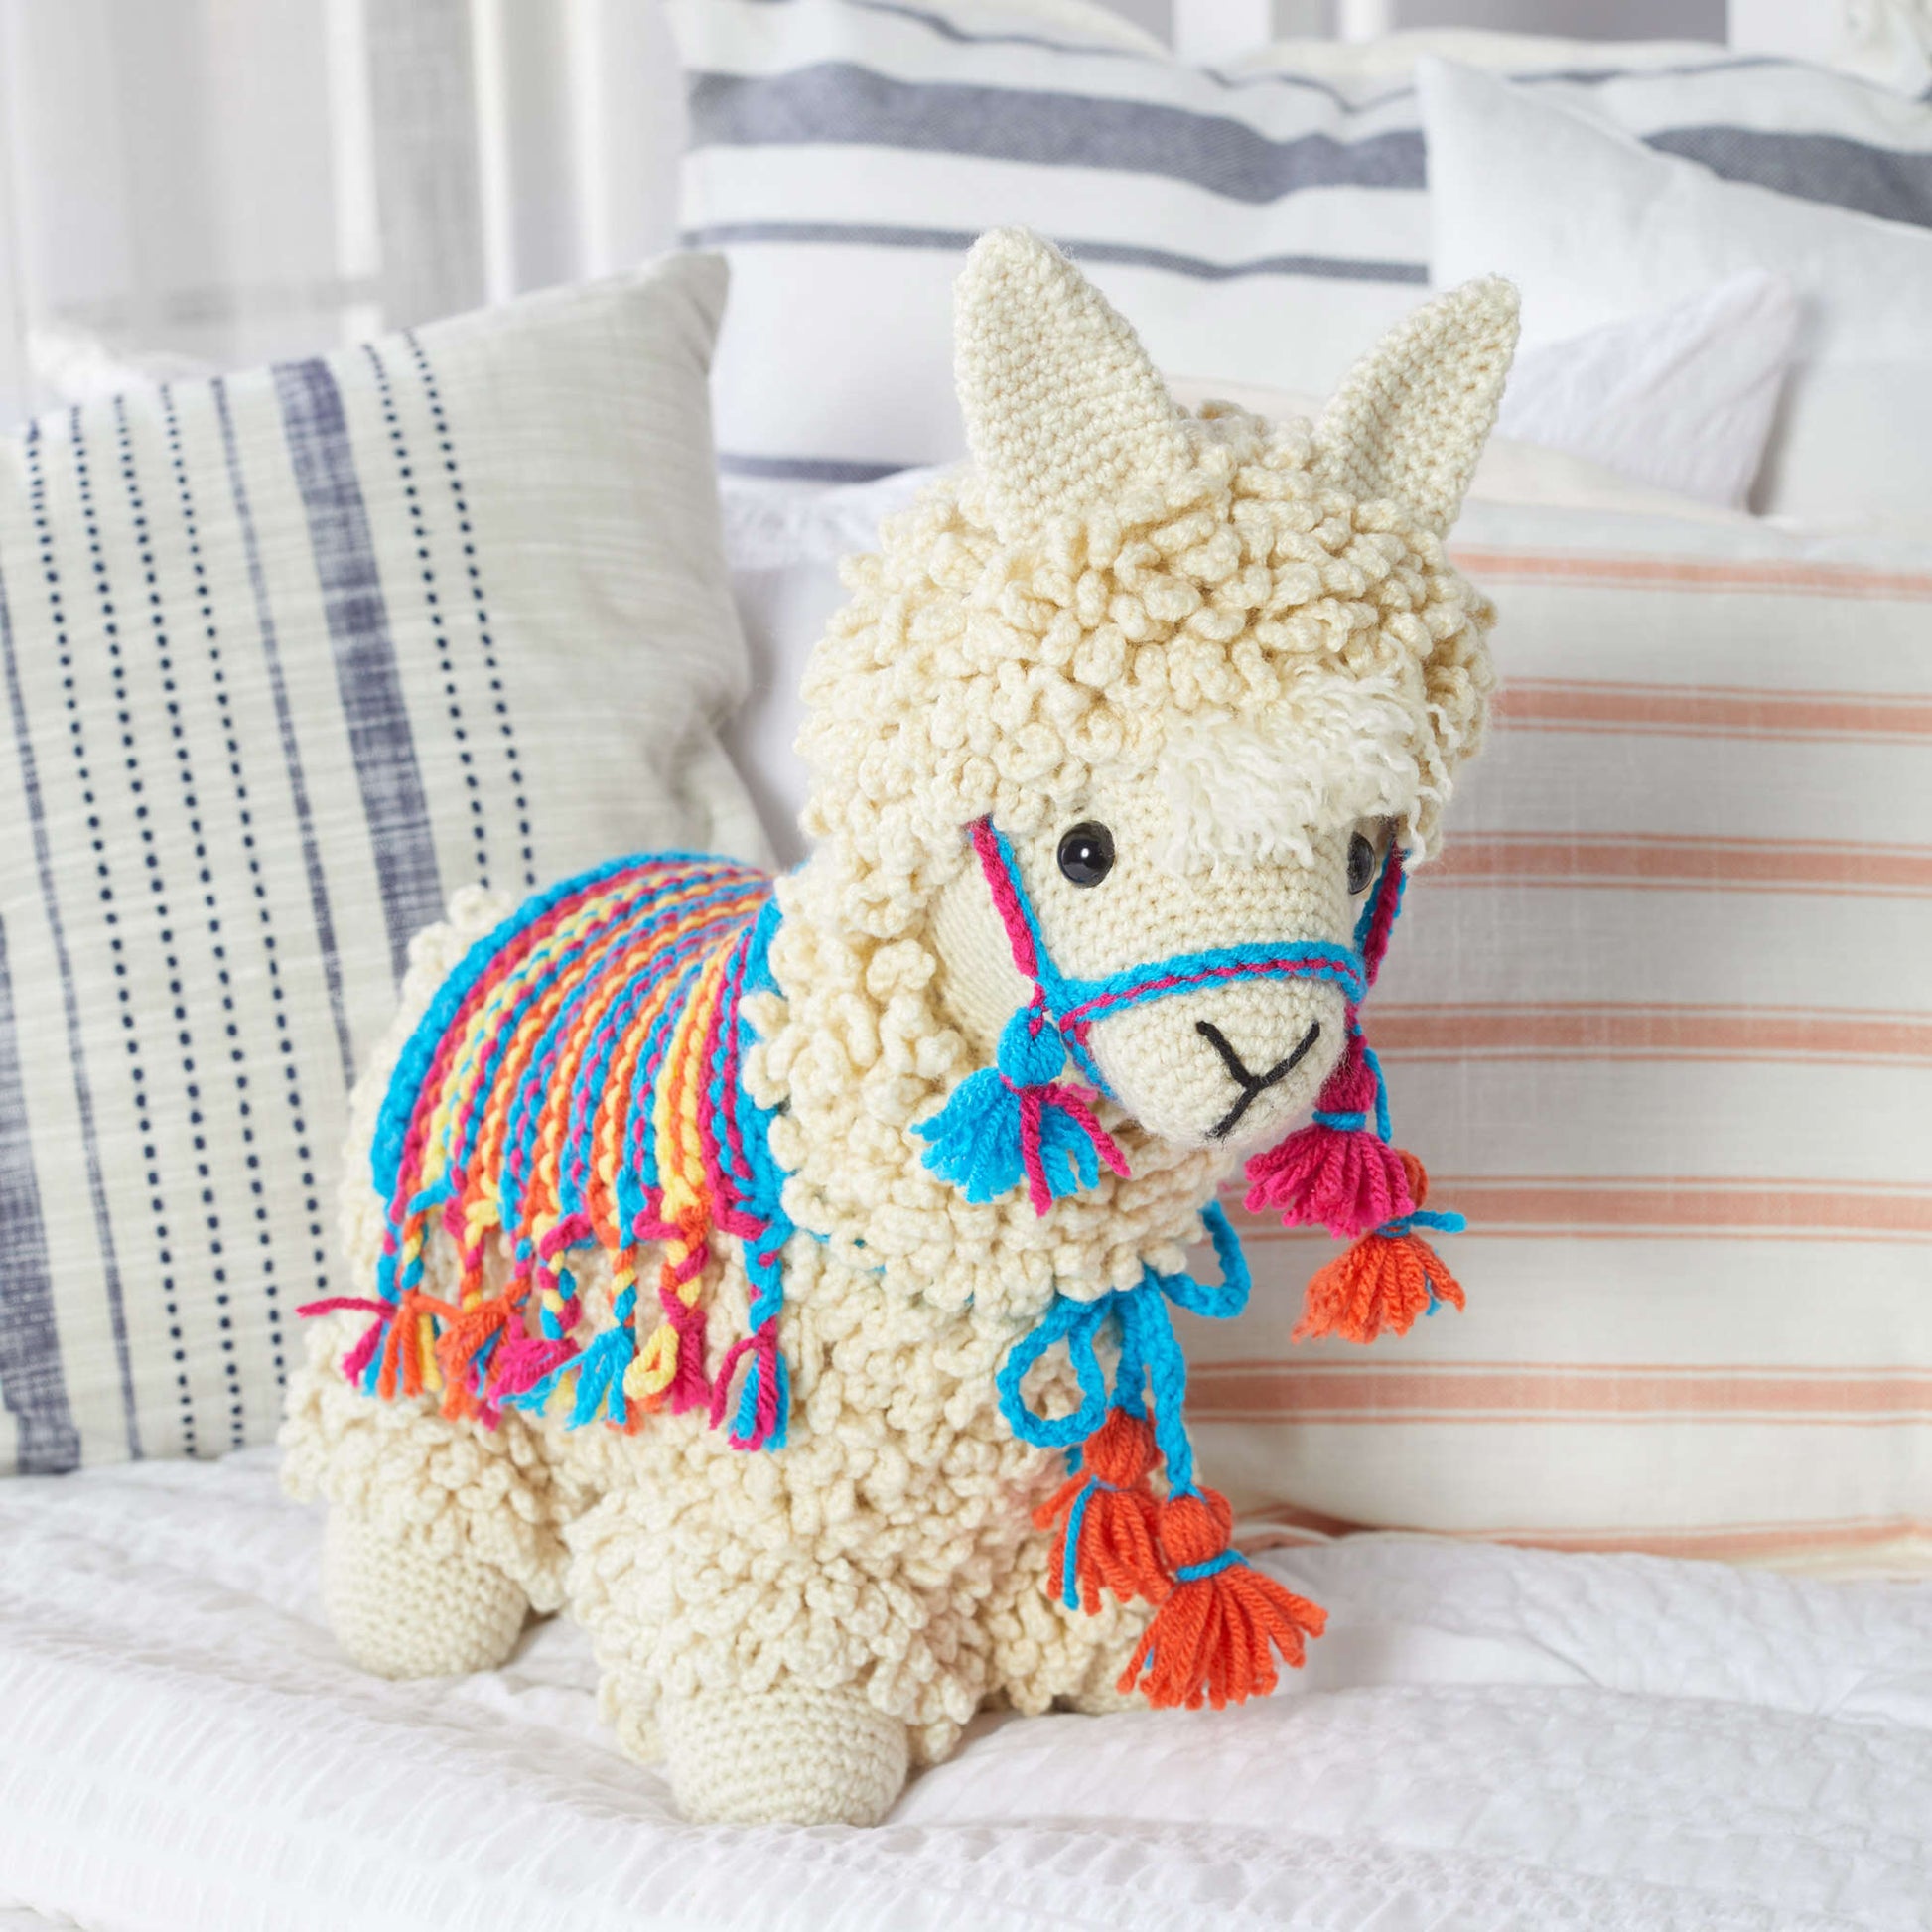 Llama Crochet Kit